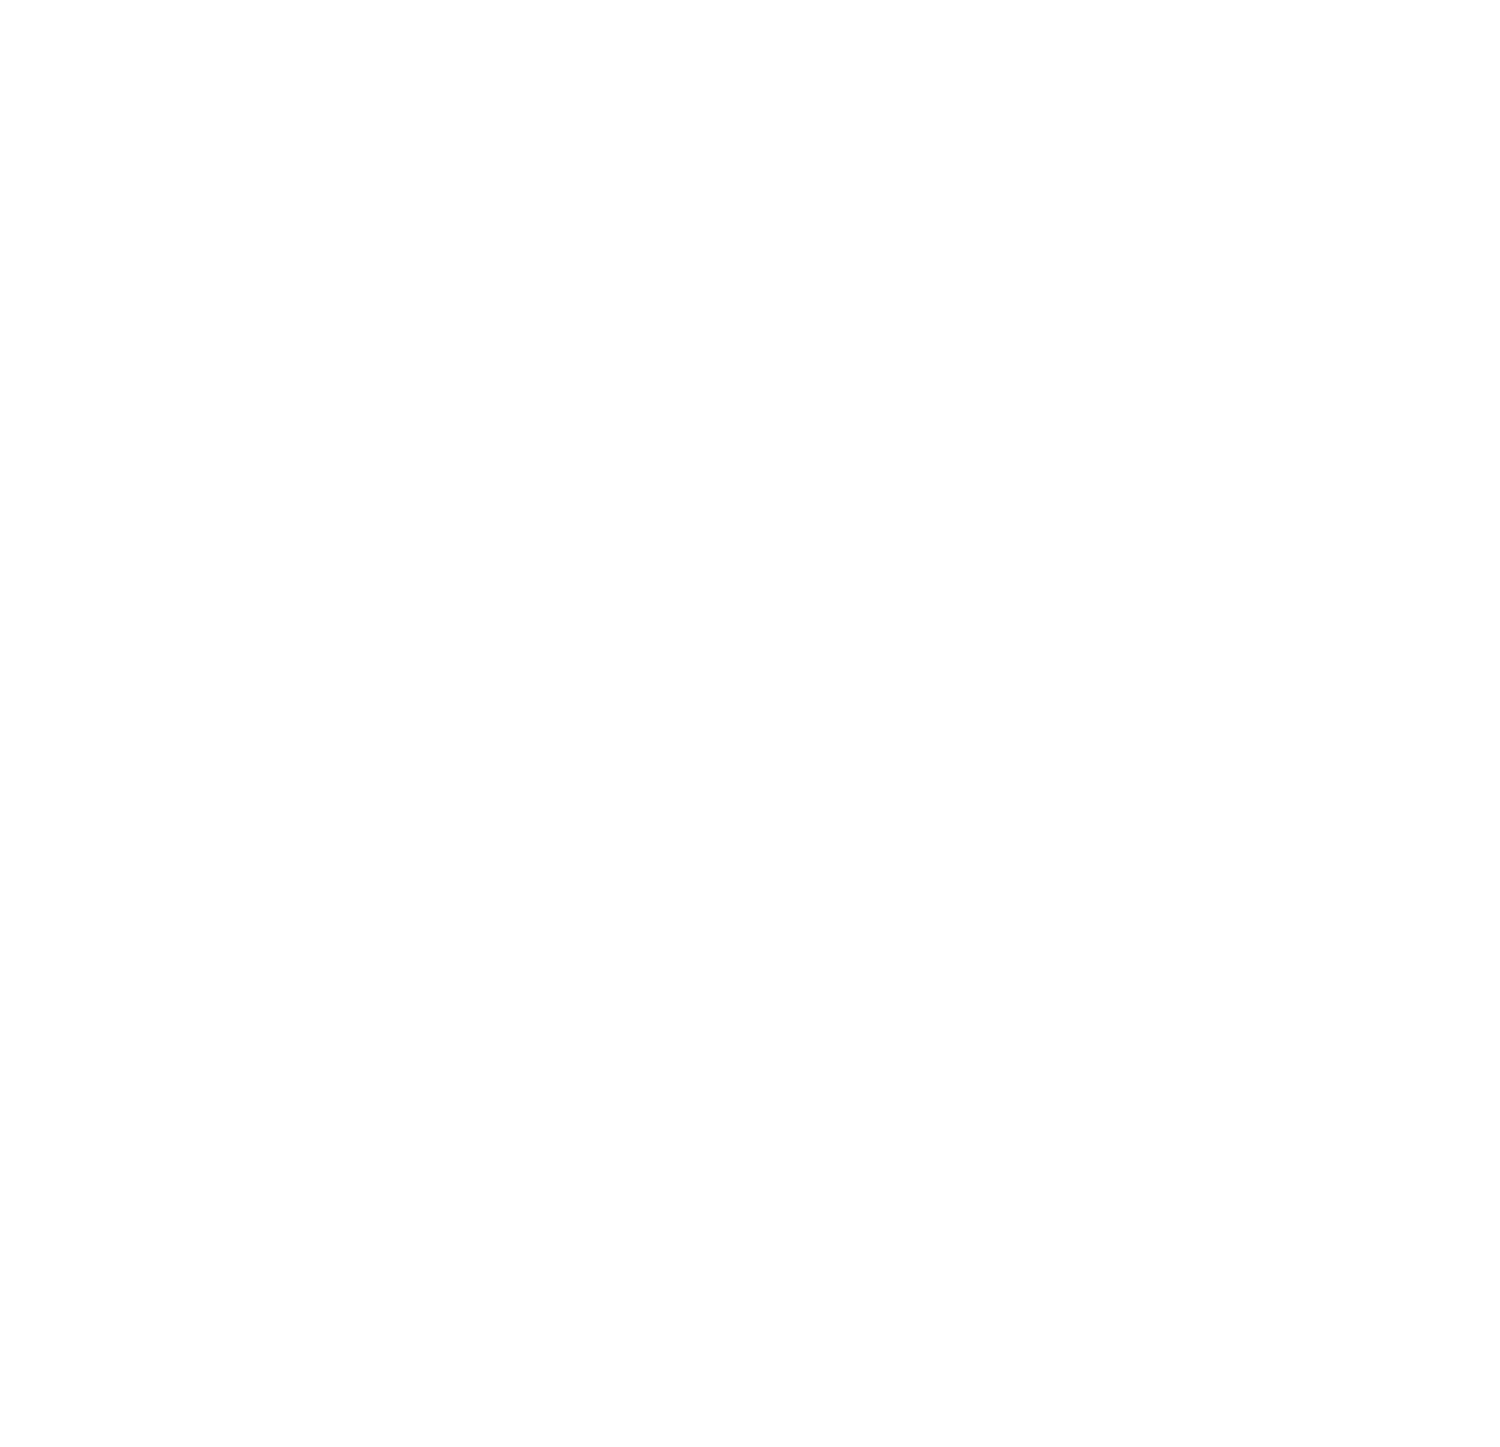 Self Inflicted Studios Self Inflicted Studios